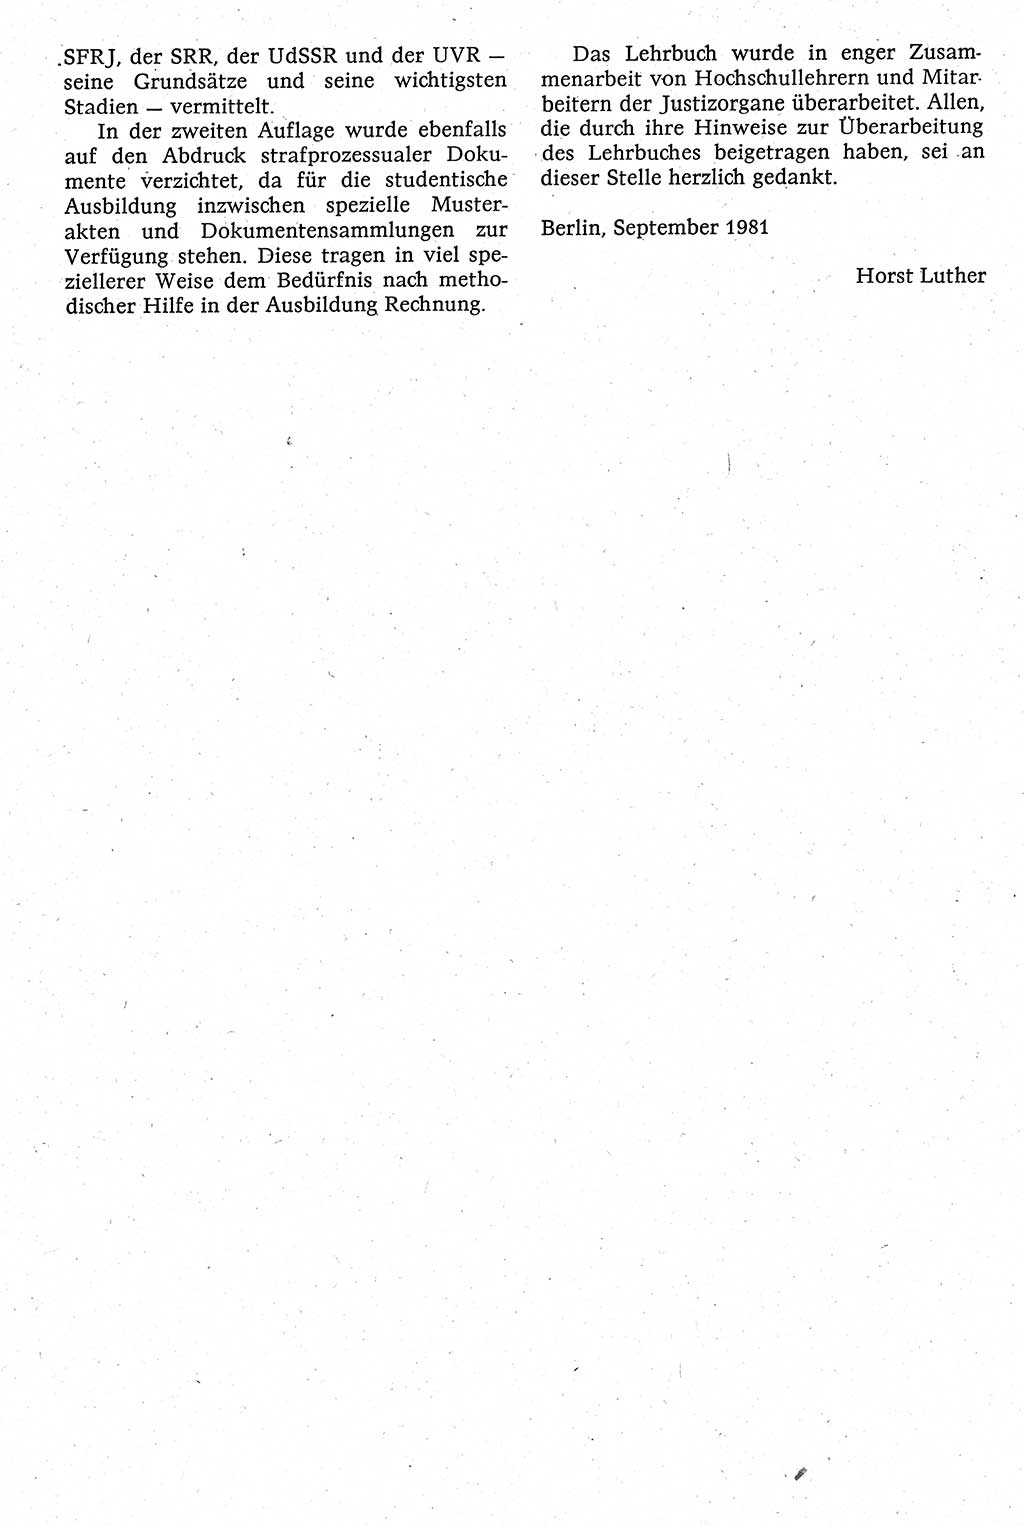 Strafverfahrensrecht [Deutsche Demokratische Republik (DDR)], Lehrbuch 1982, Seite 18 (Strafverf.-R. DDR Lb. 1982, S. 18)